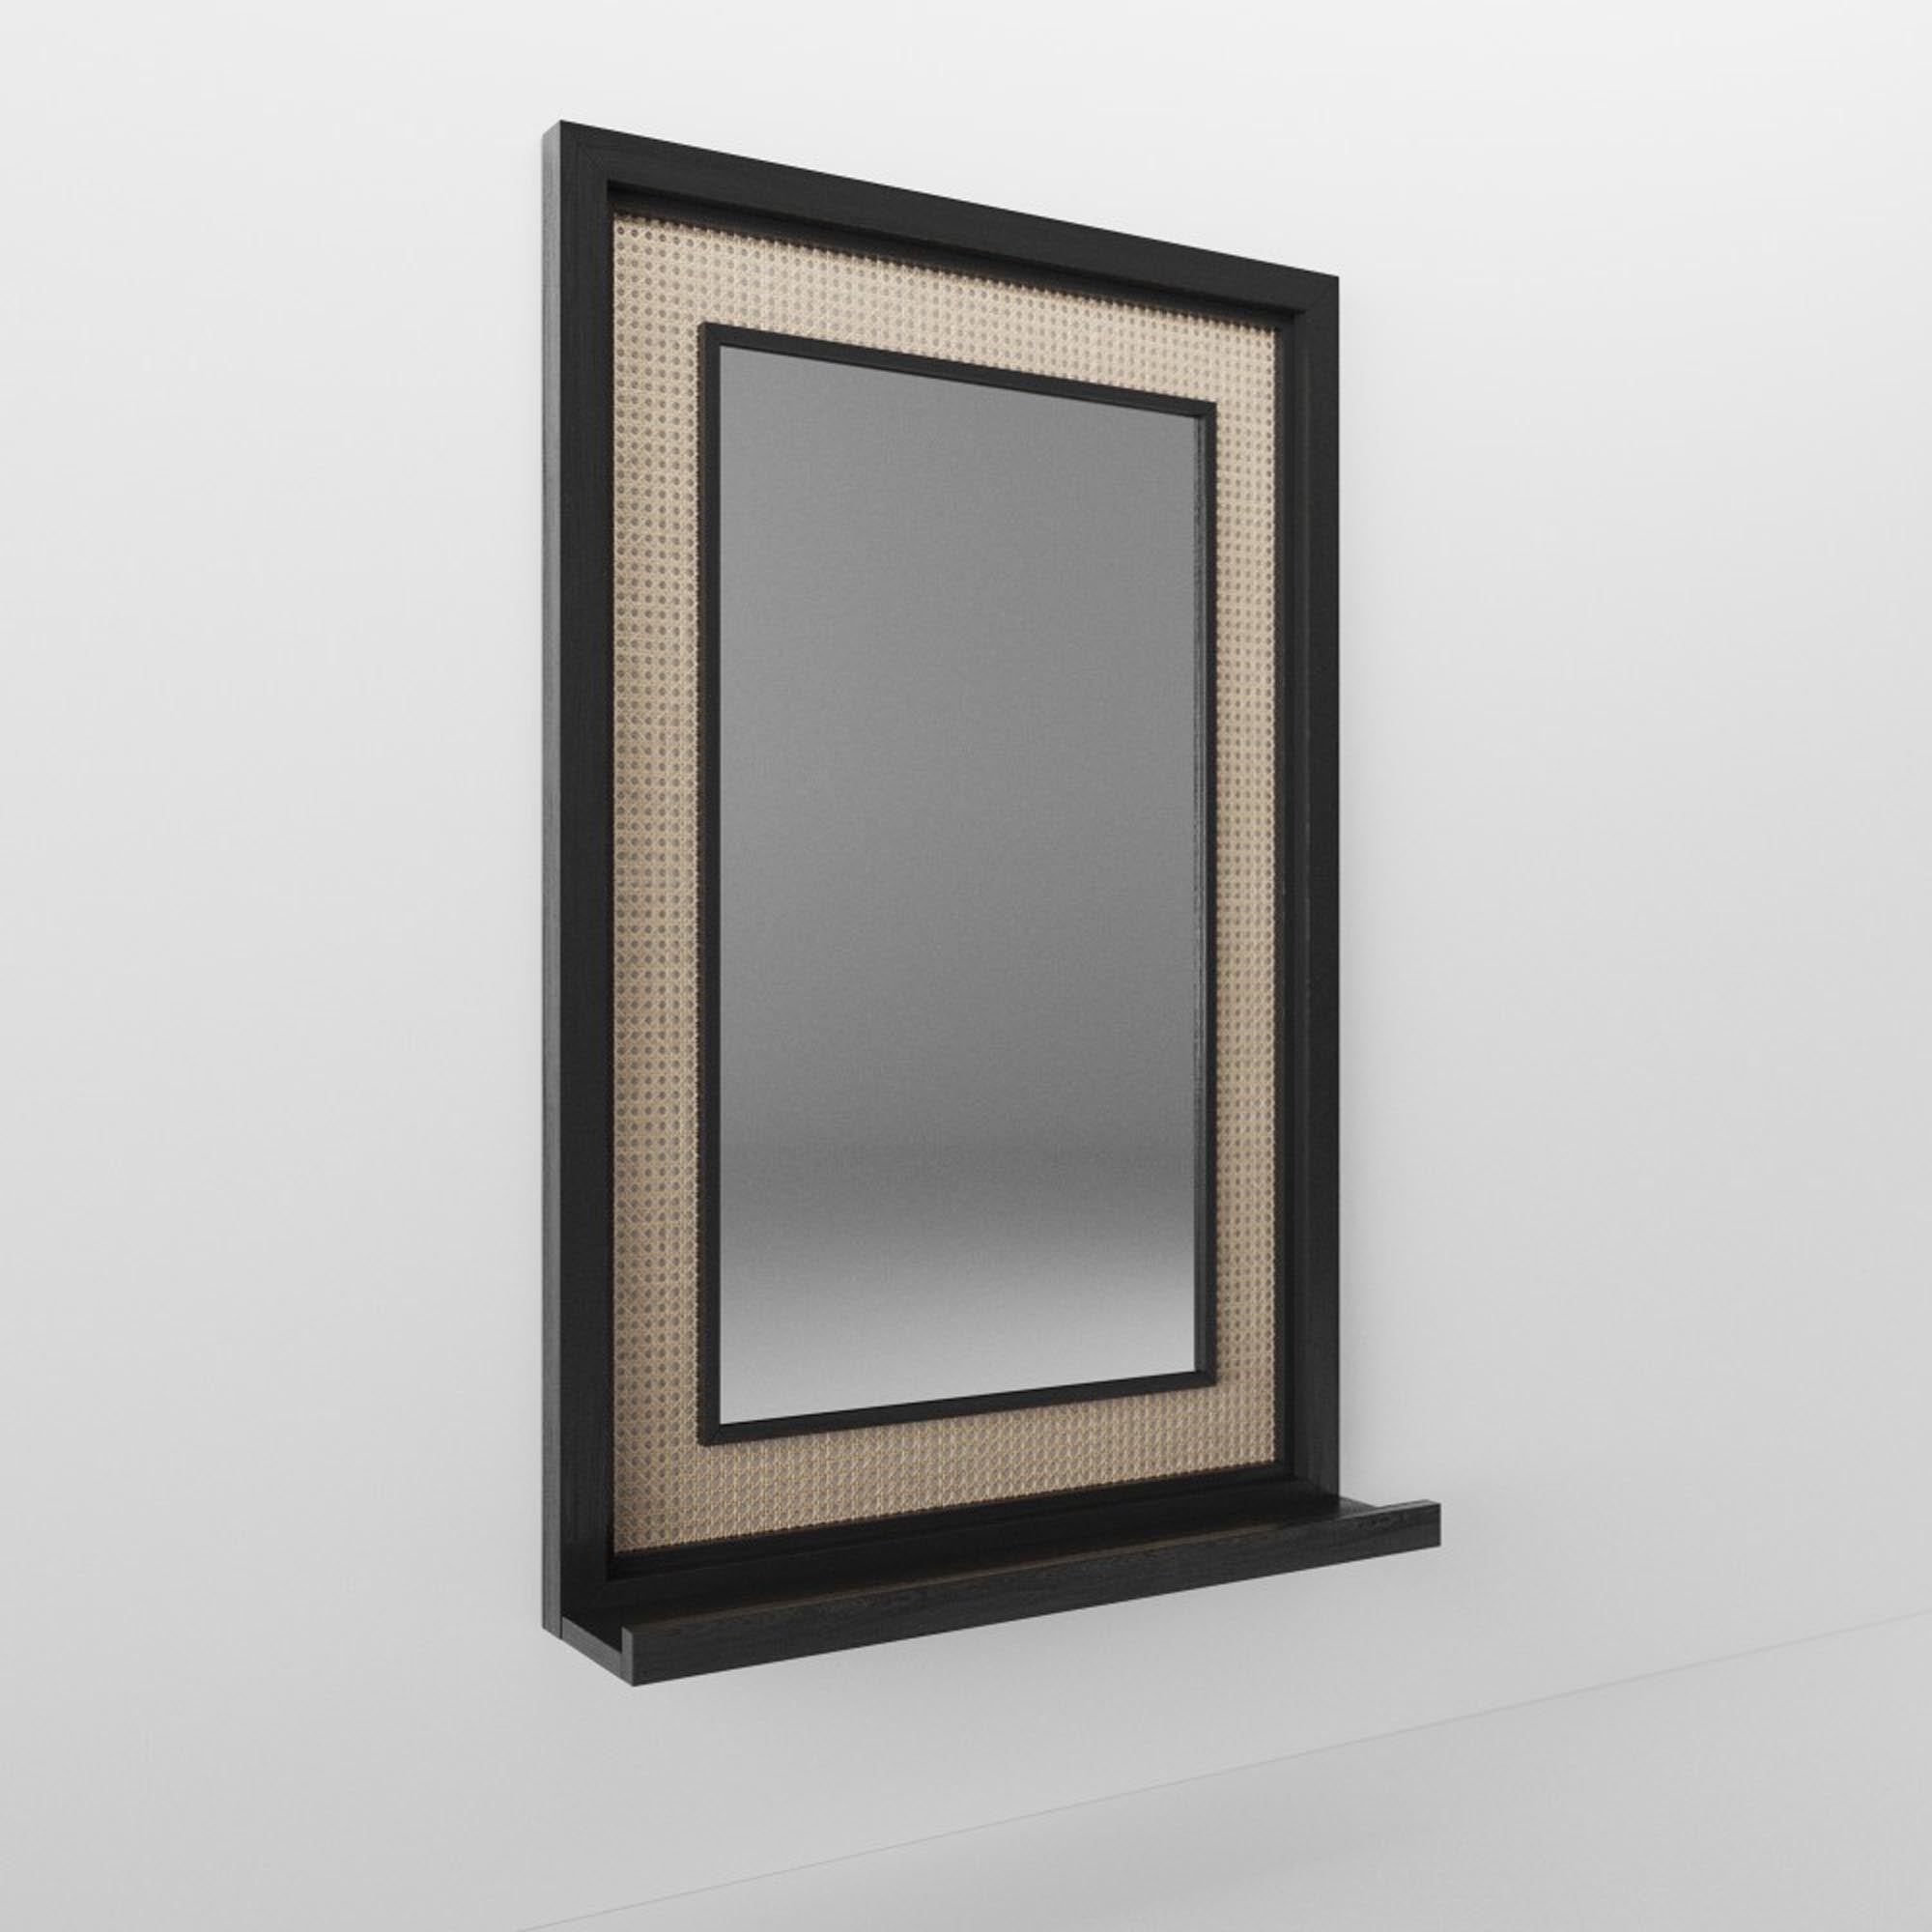 Зеркало TENETA S115, из натурального дерева, черного цвета